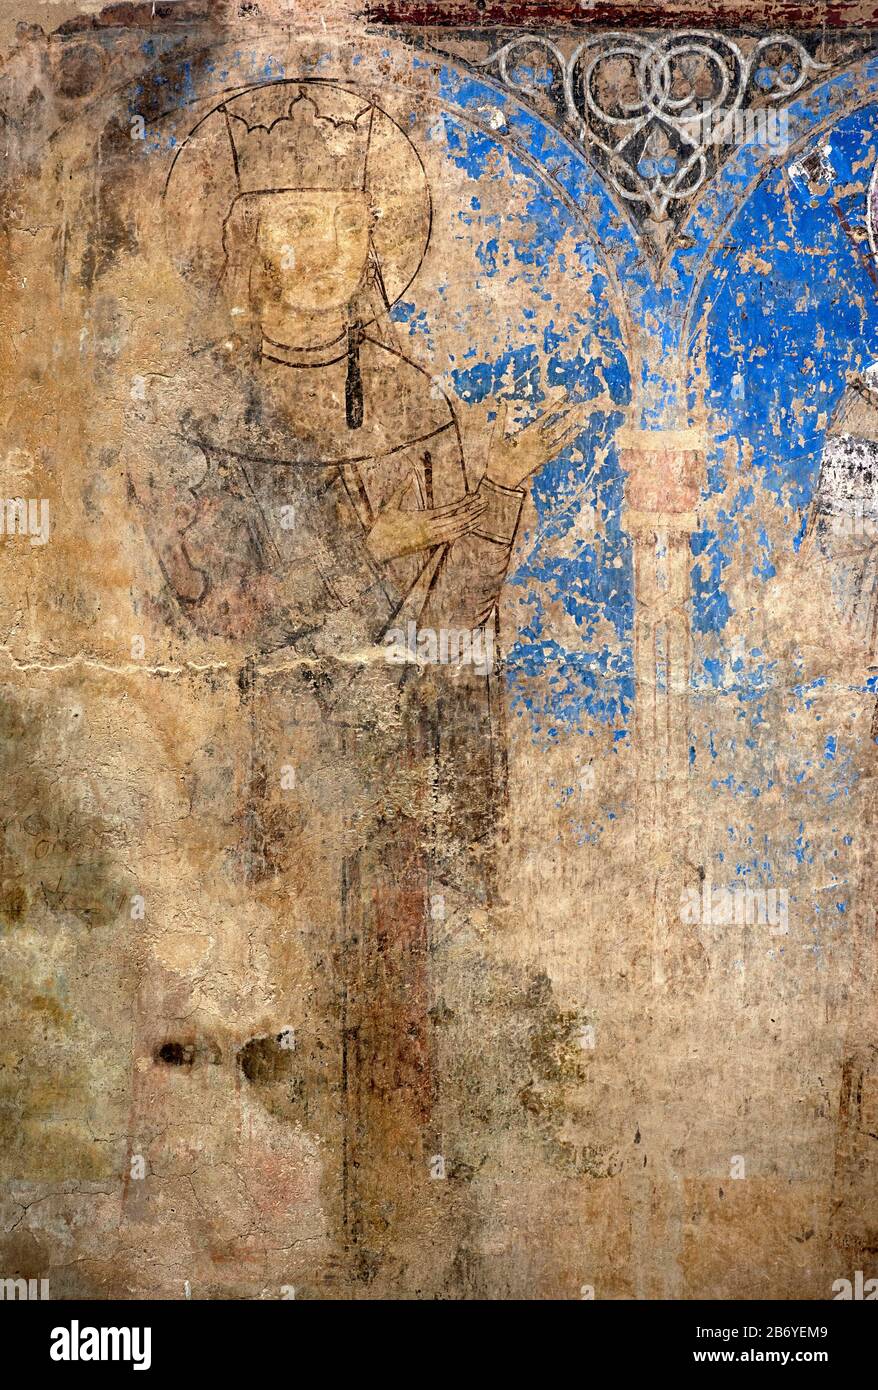 Fresque de la reine géorgienne Tamara, fille du roi Georg III, Northwand de l'église Saint-Nicolas, Monastère de Kintsvisi, région de Shida Kartli, Géorgie Banque D'Images